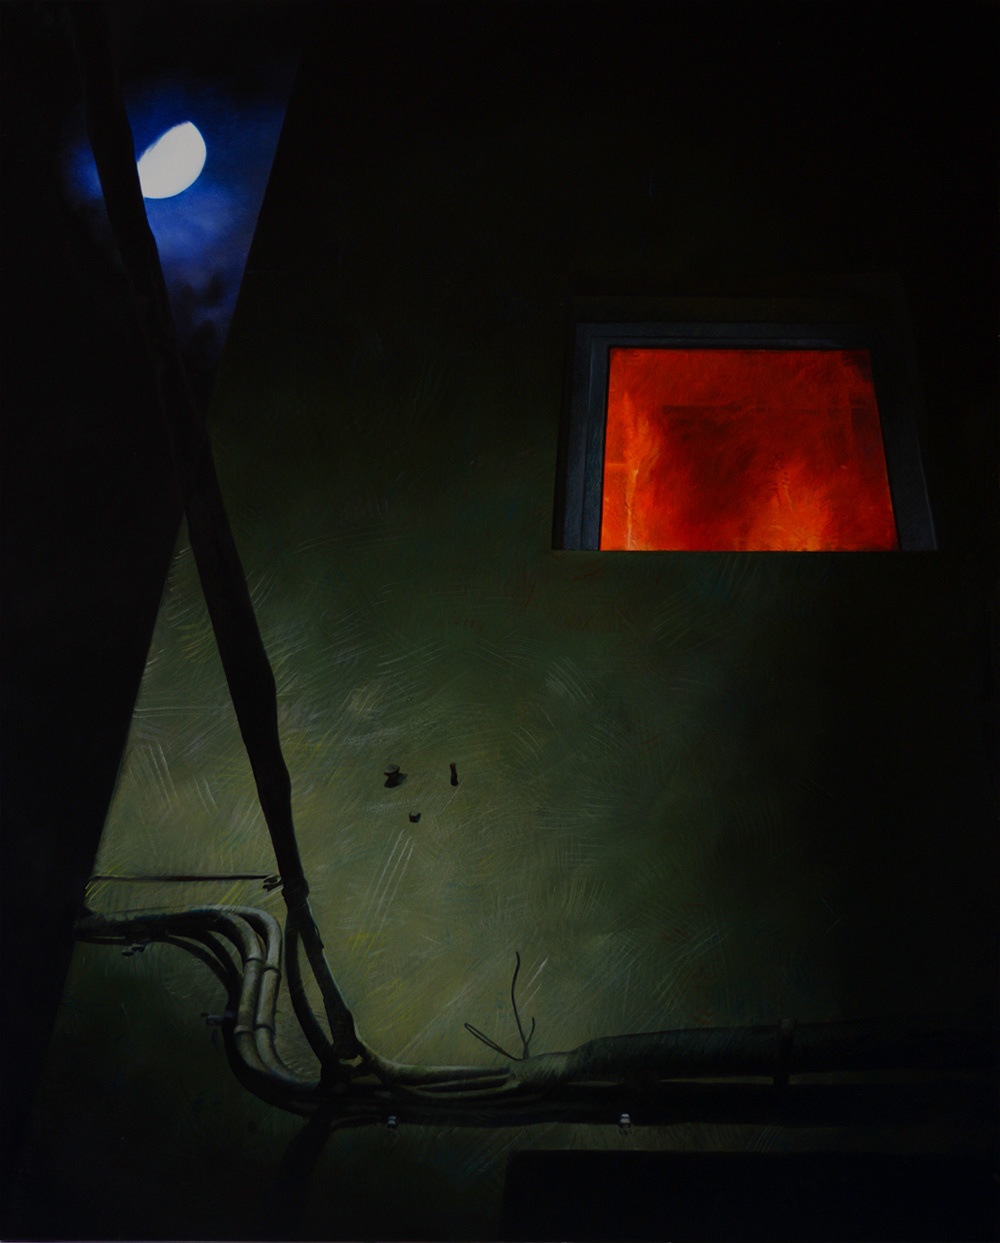 
'Notturno'
(2016)
óleo sobre lienzo,
100x80 cm
